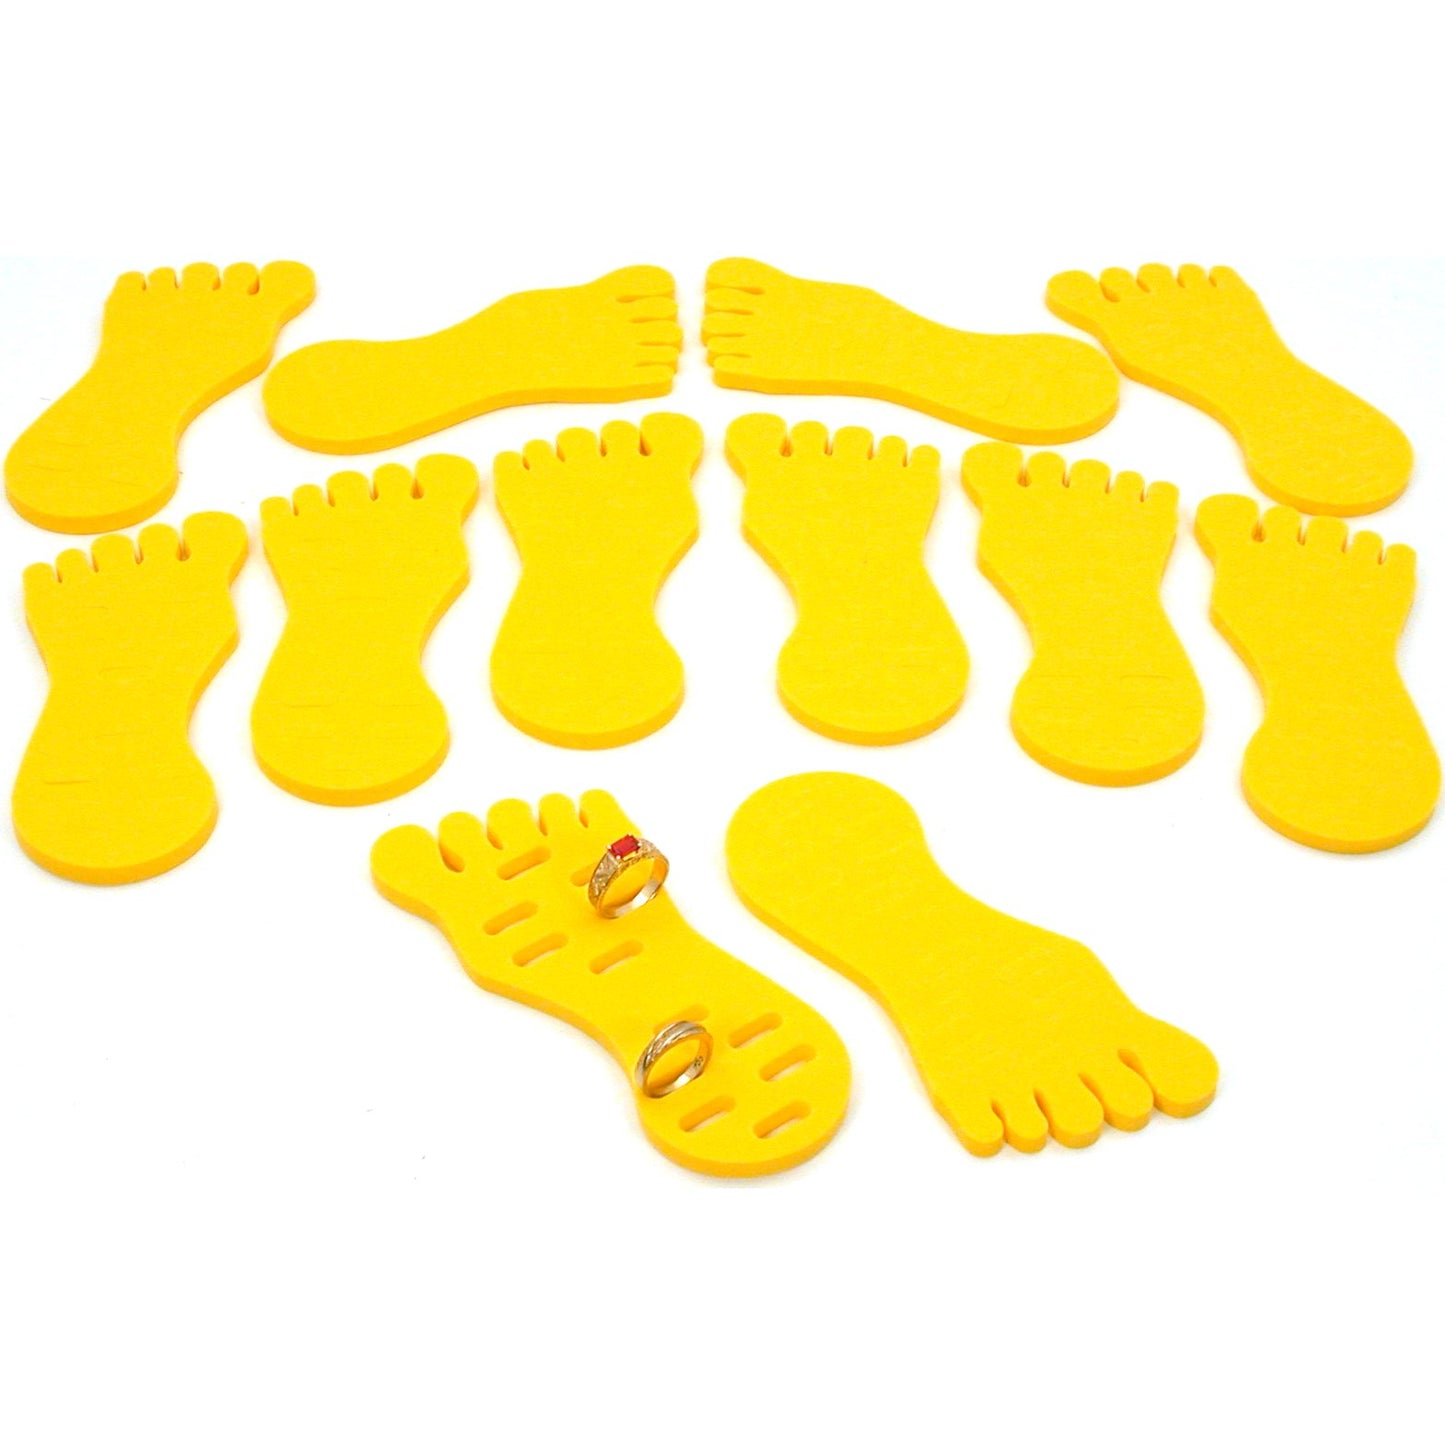 12 Yellow Foam Foot Toe Ring Displays 5 1/4"